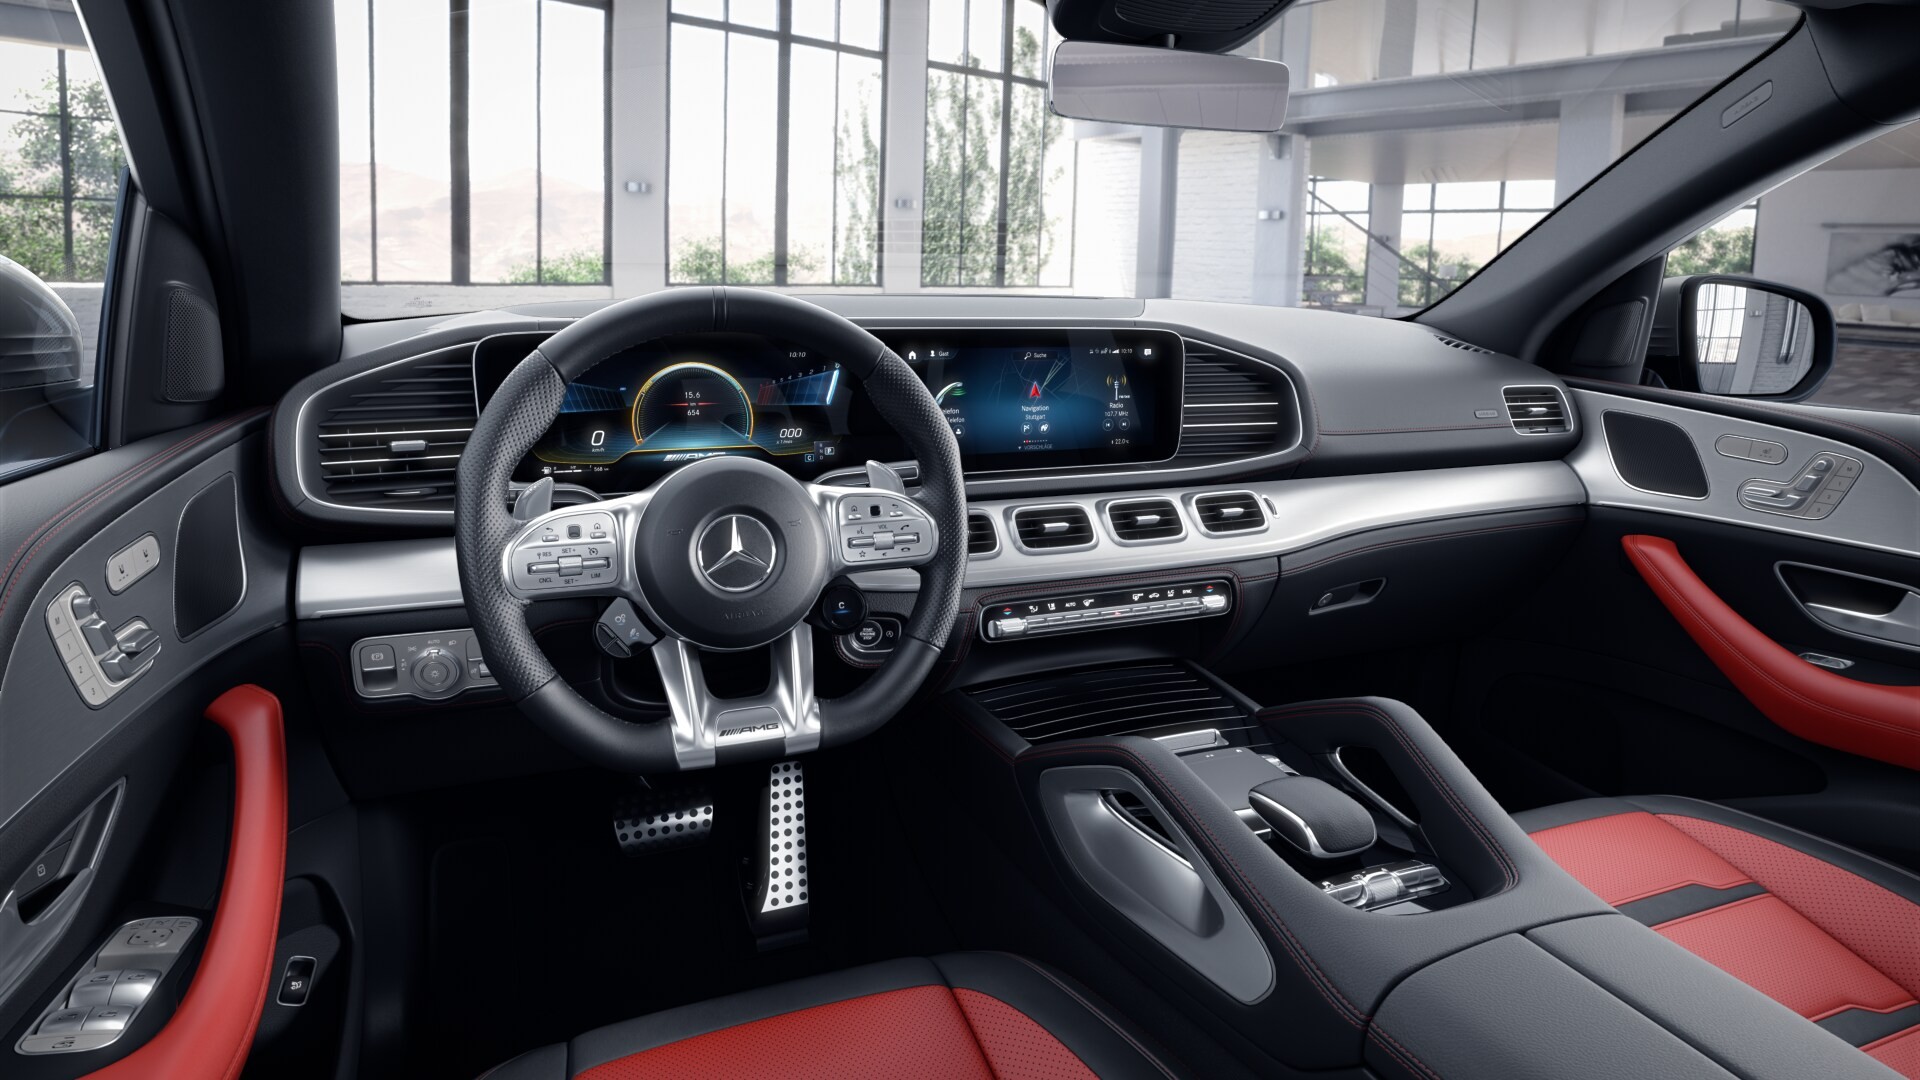 Chi tiết Mercedes-AMG GLE 53 Coupe 2022 chính hãng giá dự kiến 5,5 tỷ